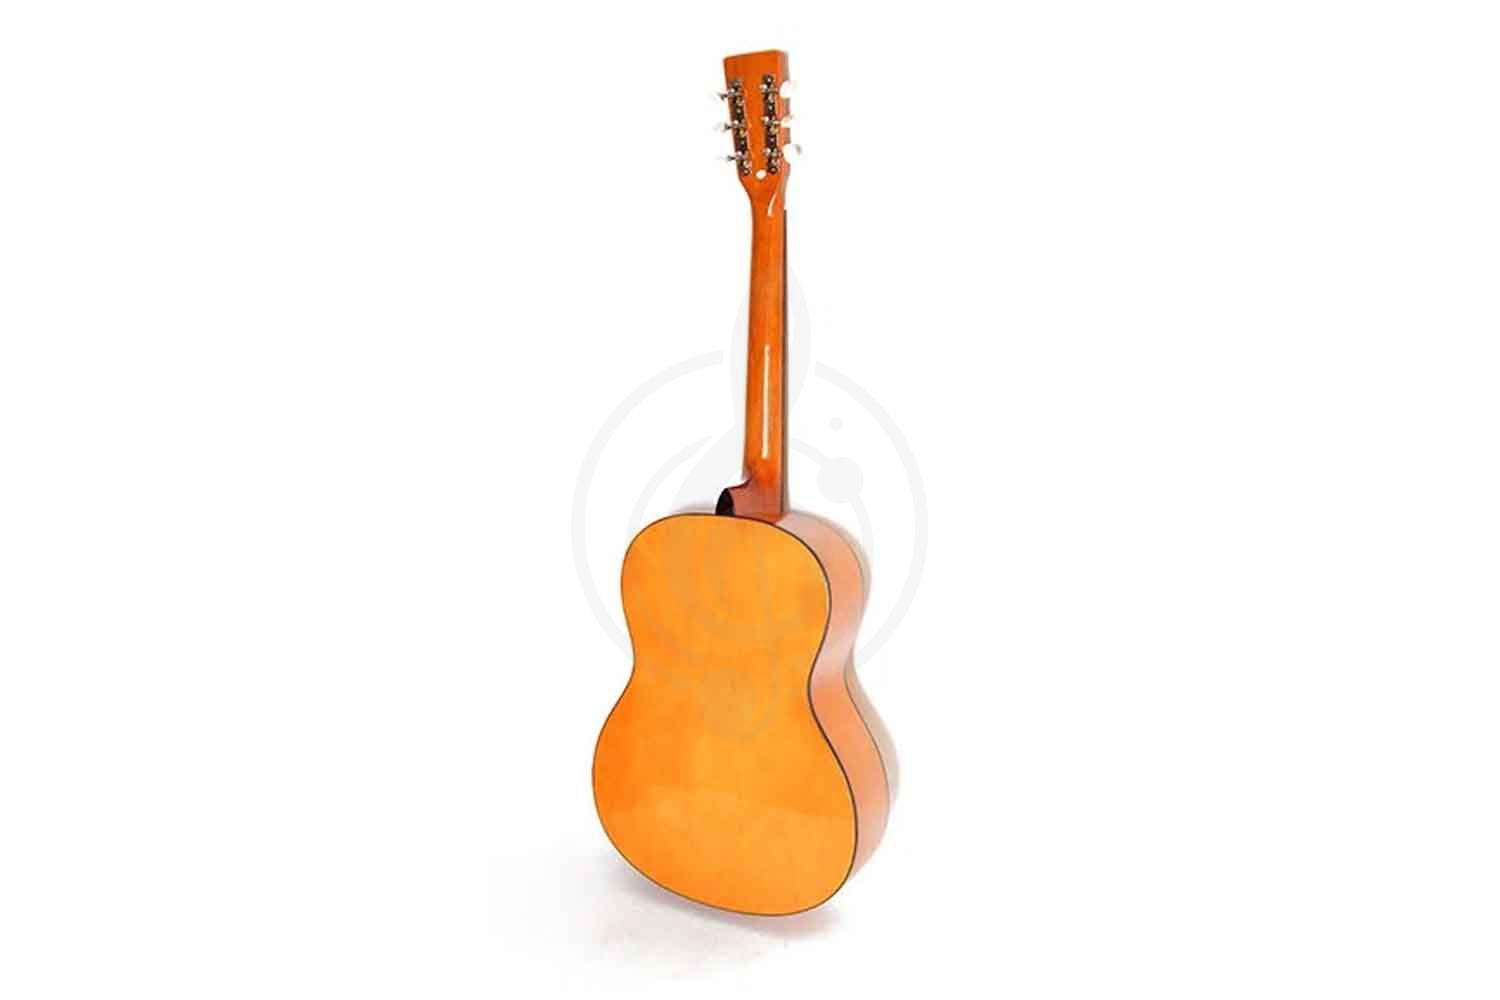 Акустическая гитара Акустические гитары Homage HOMAGE LF-3900 Фольковая 6-струнная гитара 39&quot; LF-3900 - фото 3